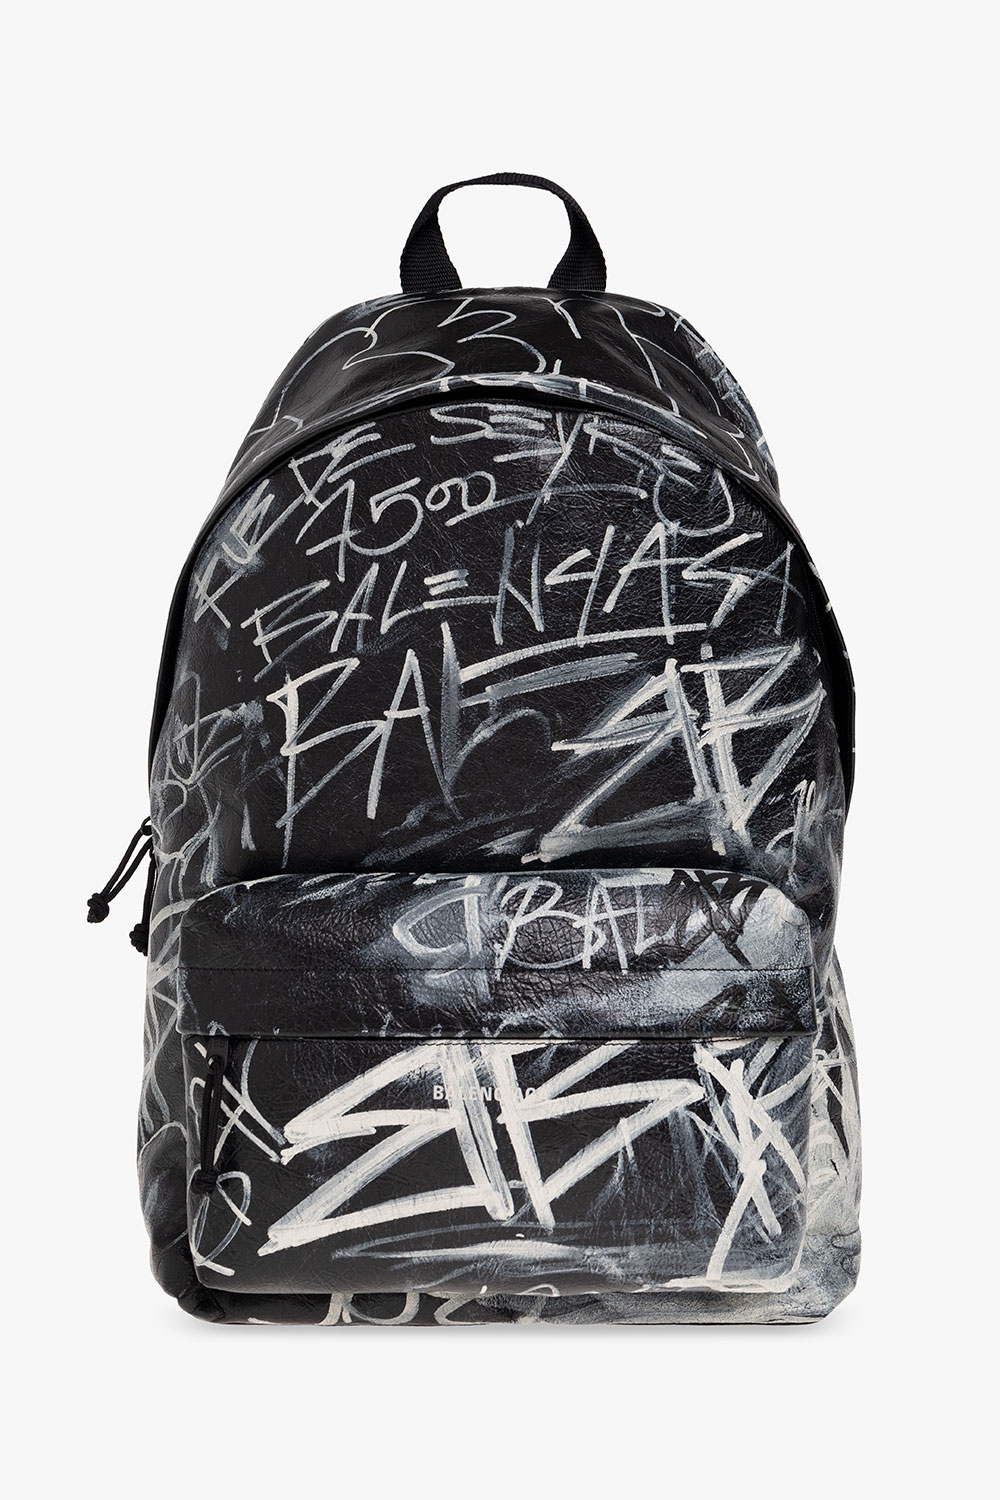 Balenciaga ‘Explorer’ backpack